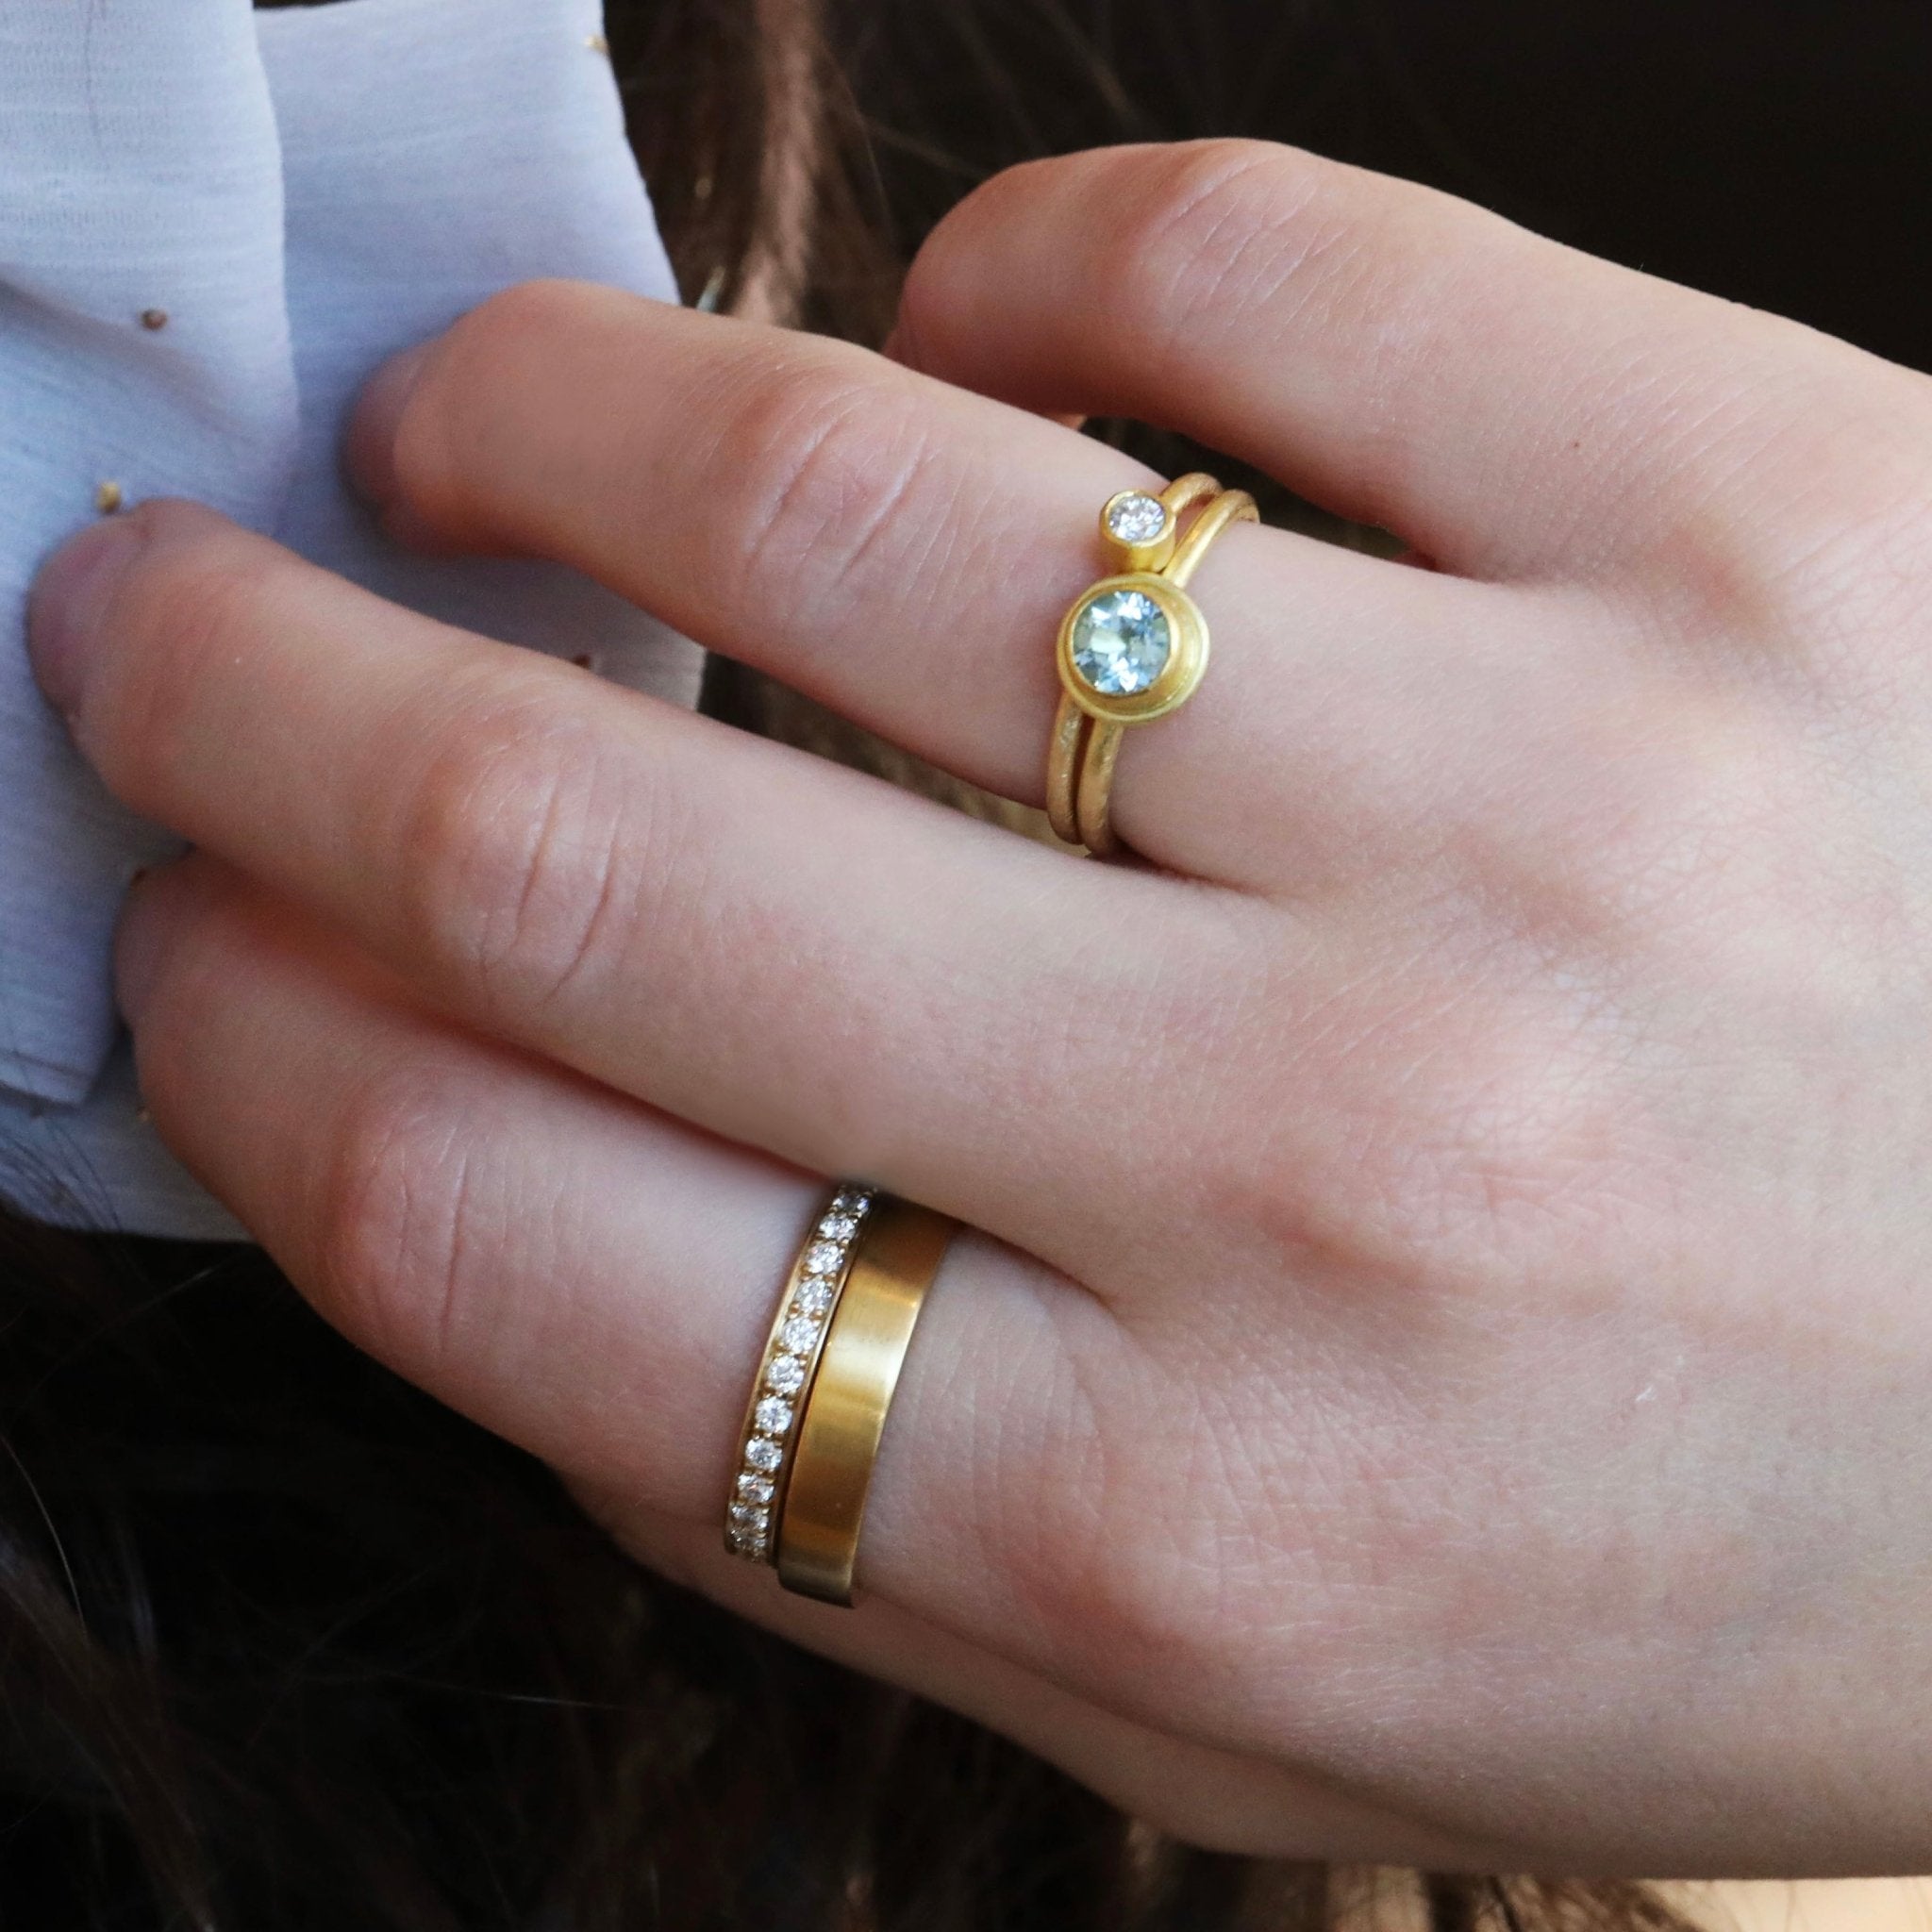 22K Gold Bezel-Set Diamond Ring - Peridot Fine Jewelry - Petra Class